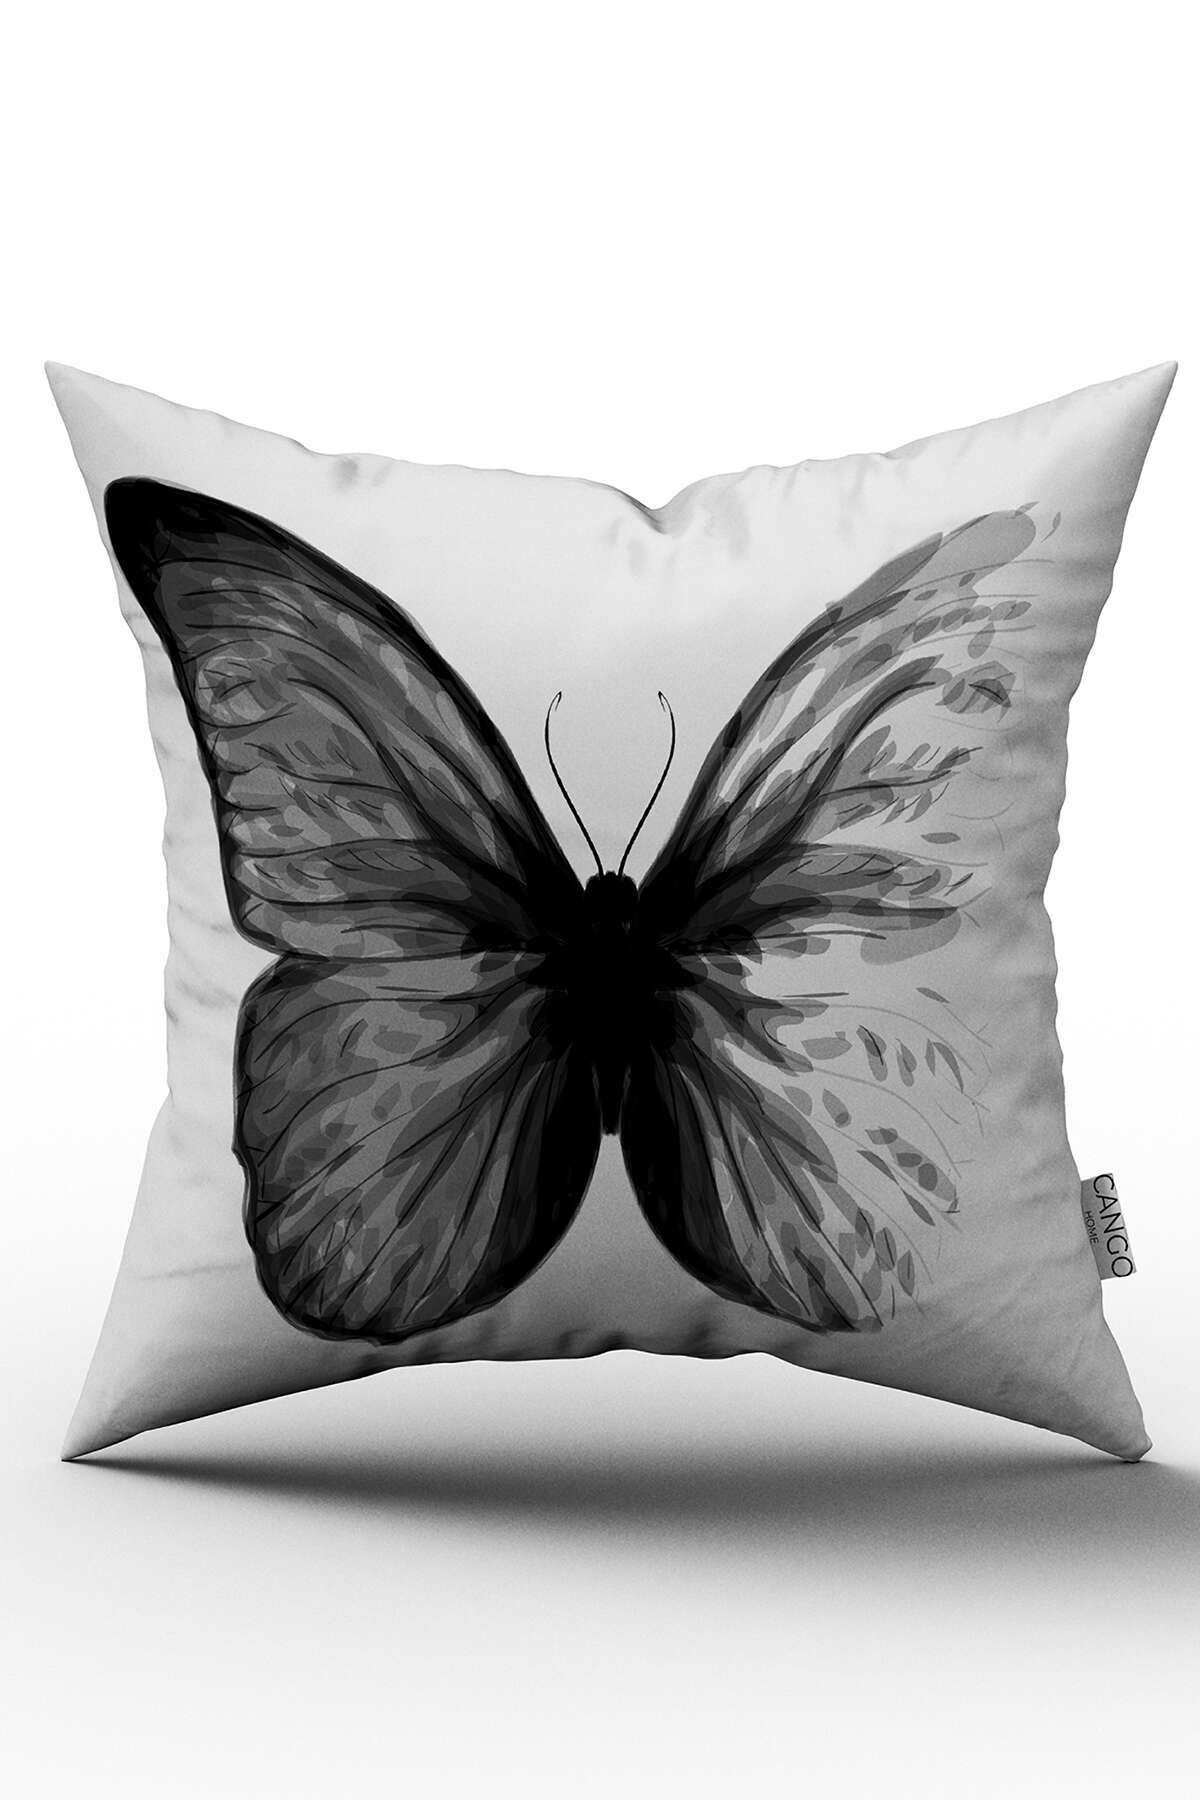 Cango Home Siyah Kelebek Özel Tasarım Yastık Kırlent Kılıfı - Otyk576